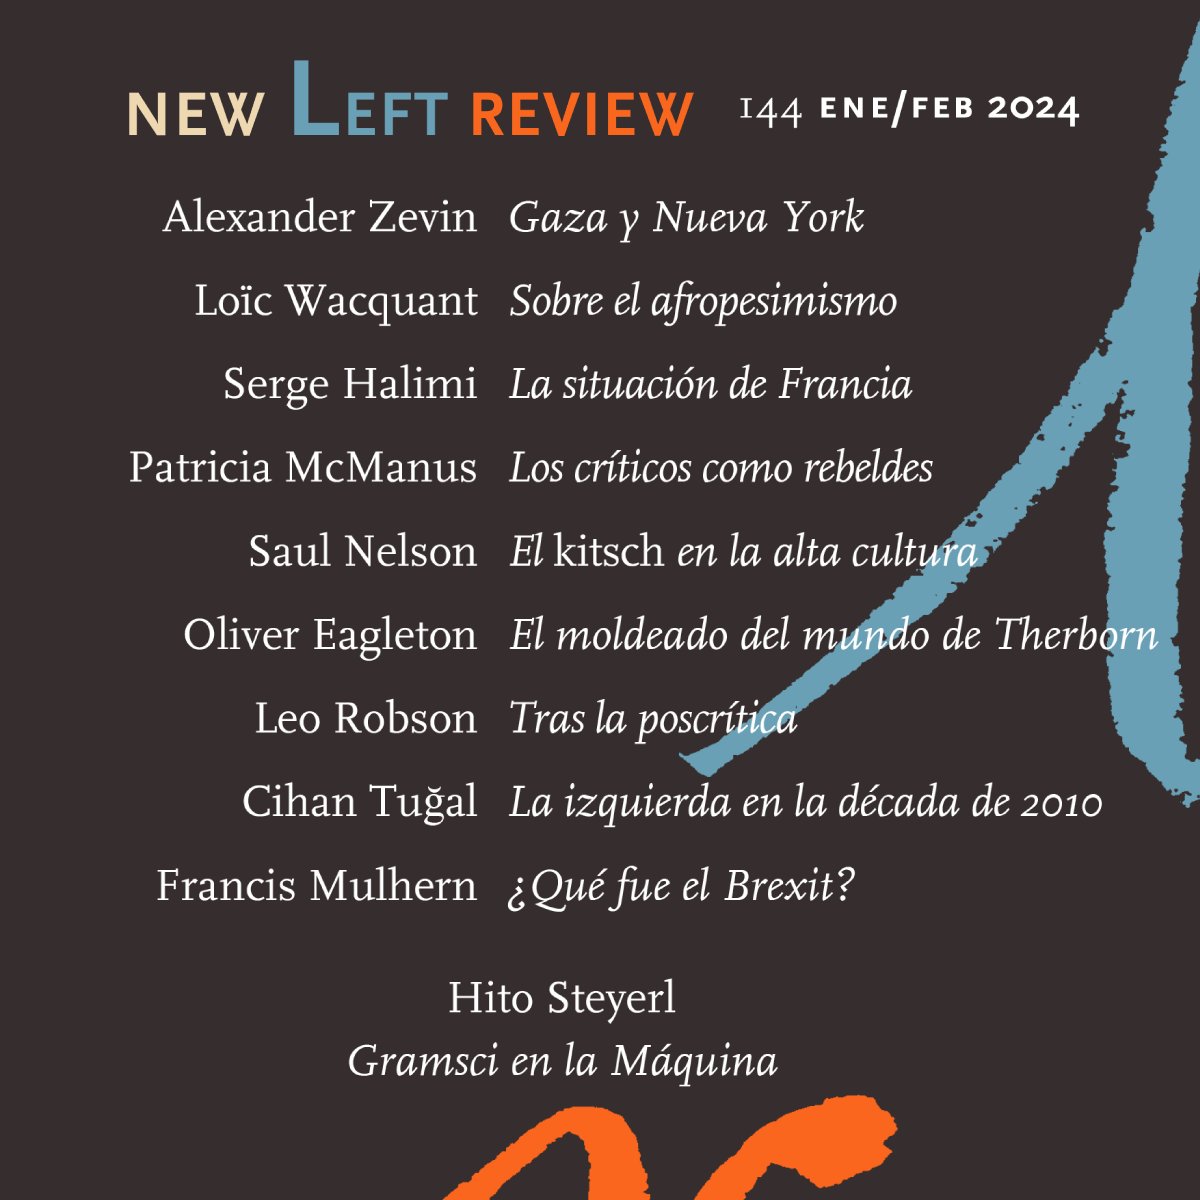 Ya disponible el nuevo número de @NewLeftReview Con Alexander Zevin sobre Gaza y Nueva York, Loïc Wacquant sobre el afropesimismo, Hito Steyerl sobre Gramsci y la IA, y mucho más newleftreview.es